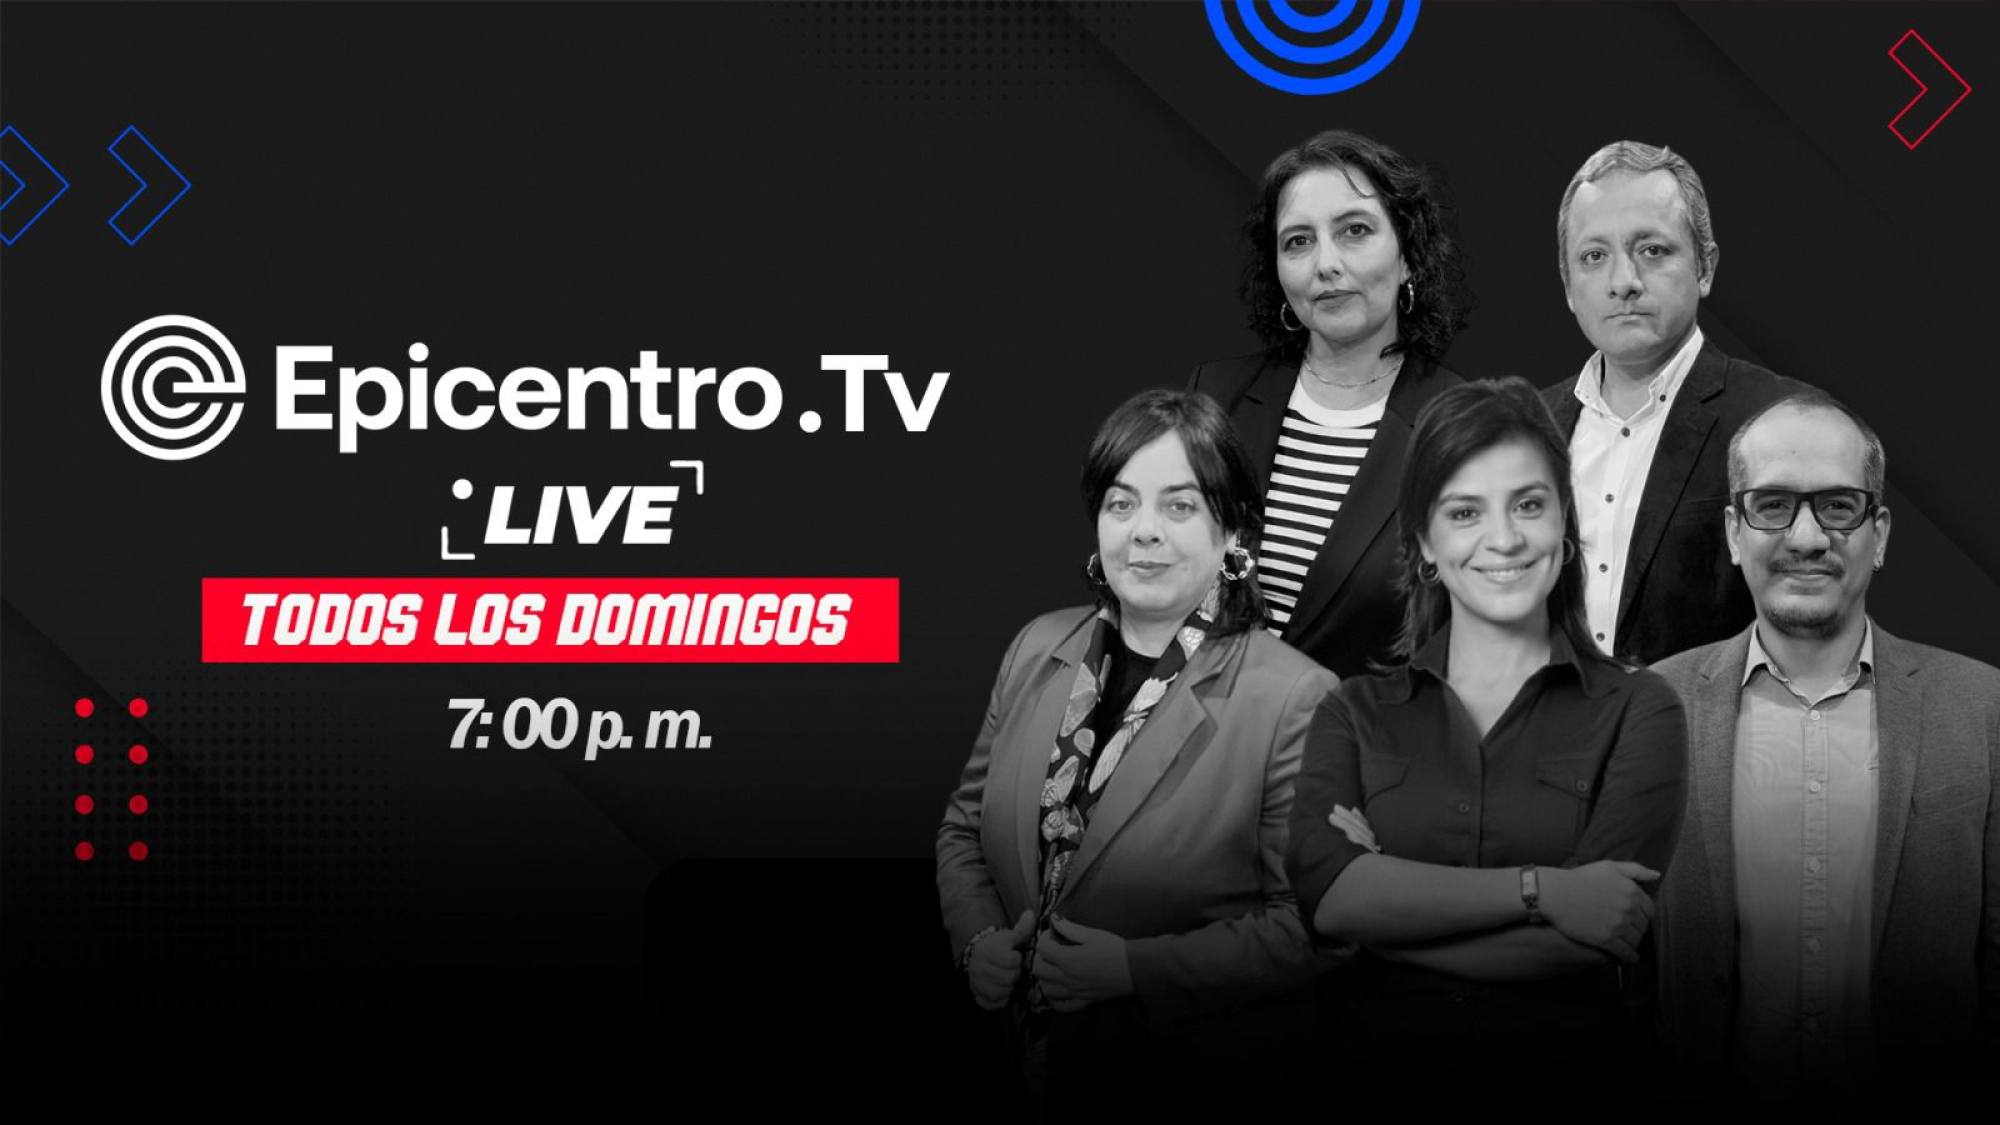 Epicentro TV Live | Esta noche a las 7 p. m., Epicentro TV